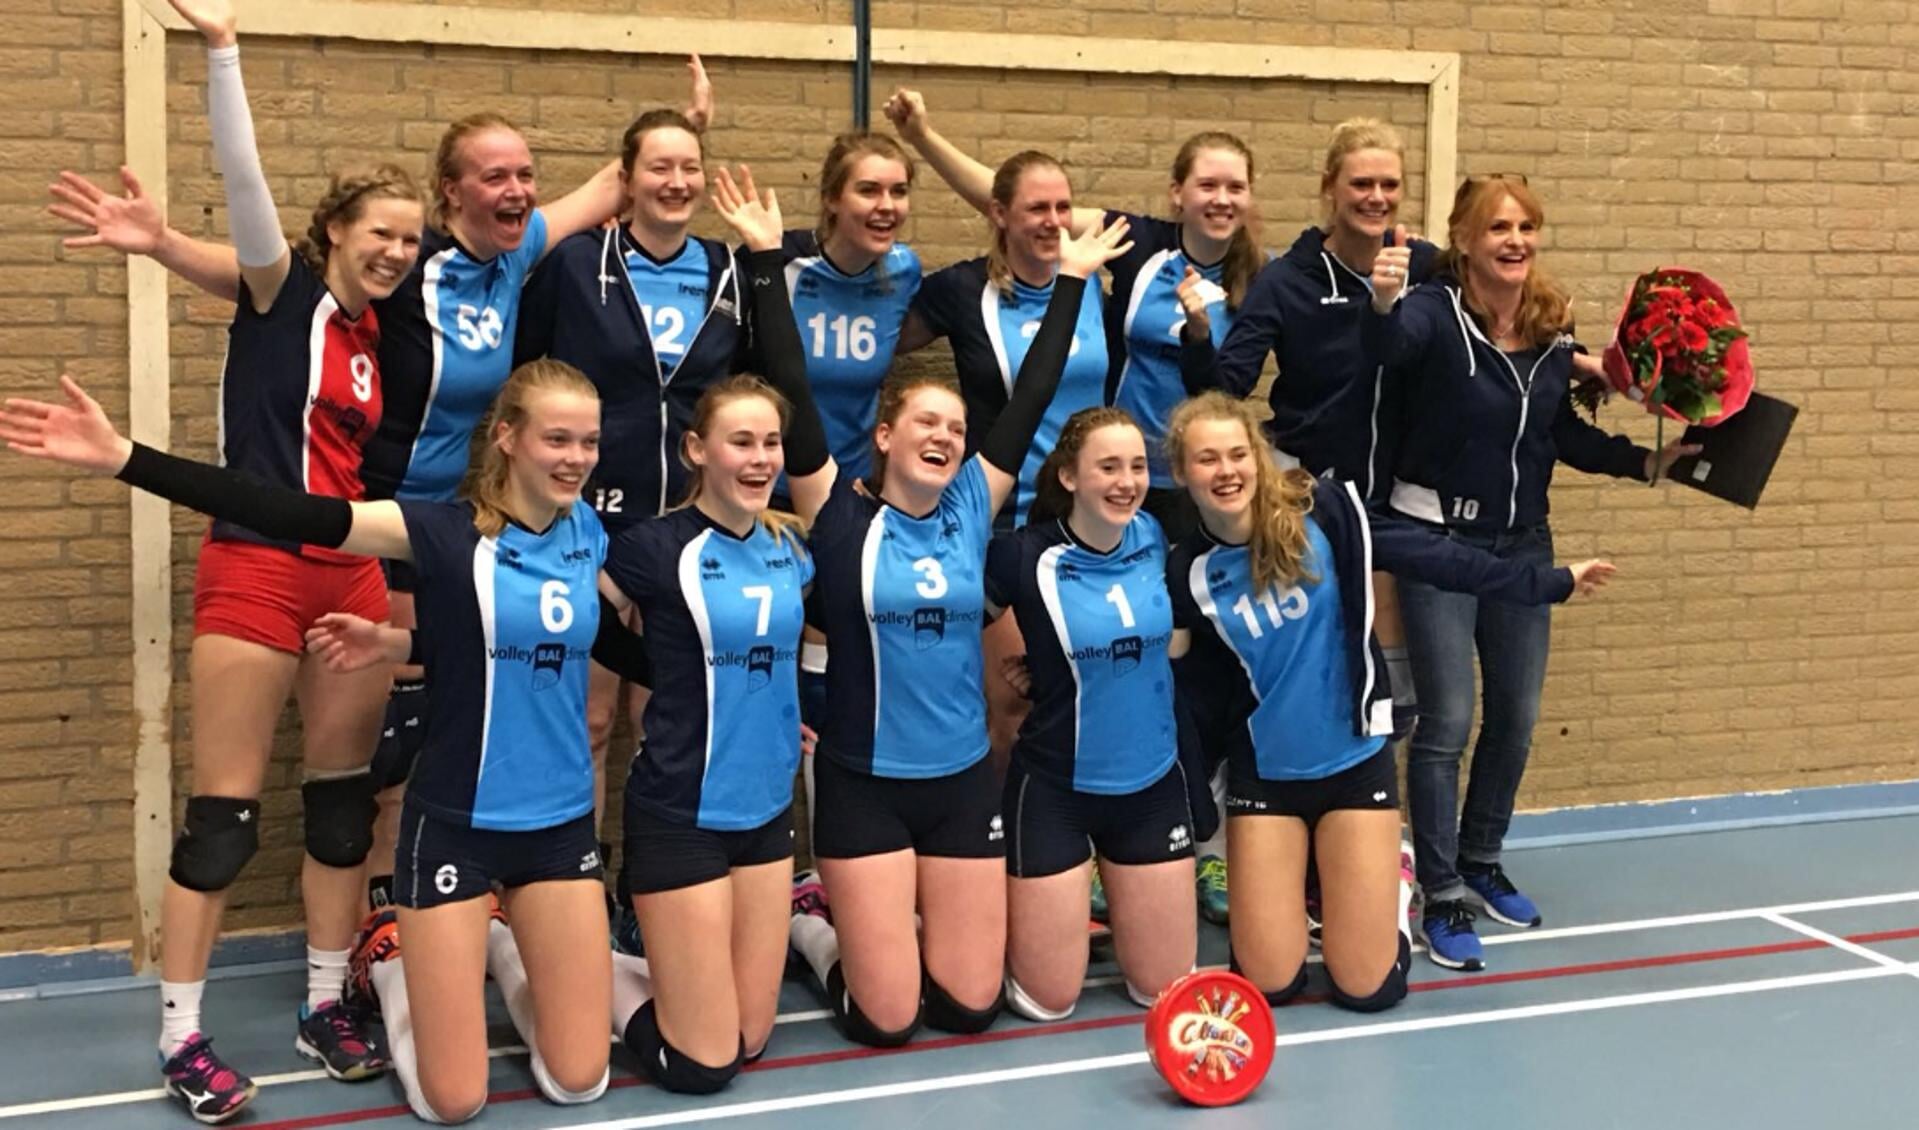 De tweede promotie op rij (vorig jaar promoveerde het team naar de 3e divisie) is een feit en de Bilthovense volleybalsters gaan naar de 2e divisie. 